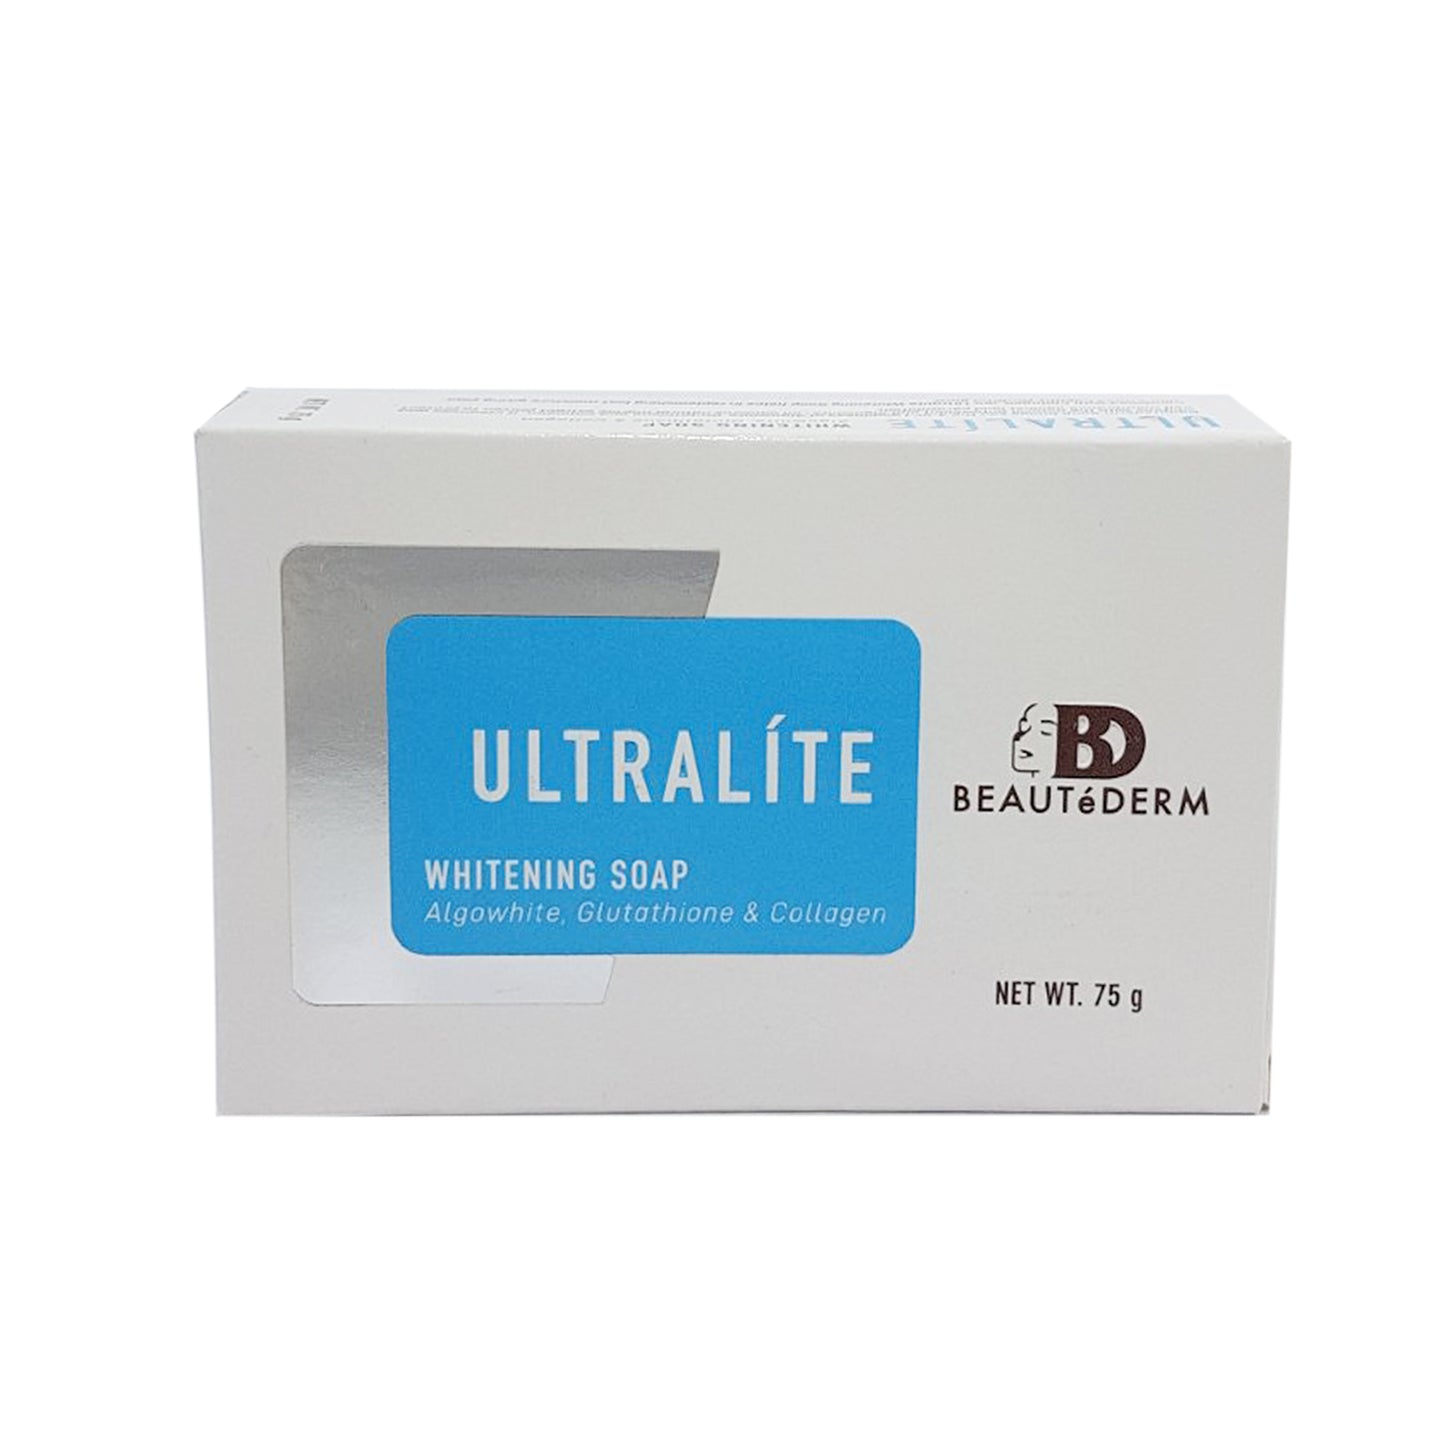 Beautederm Ultralite Whitening Soap